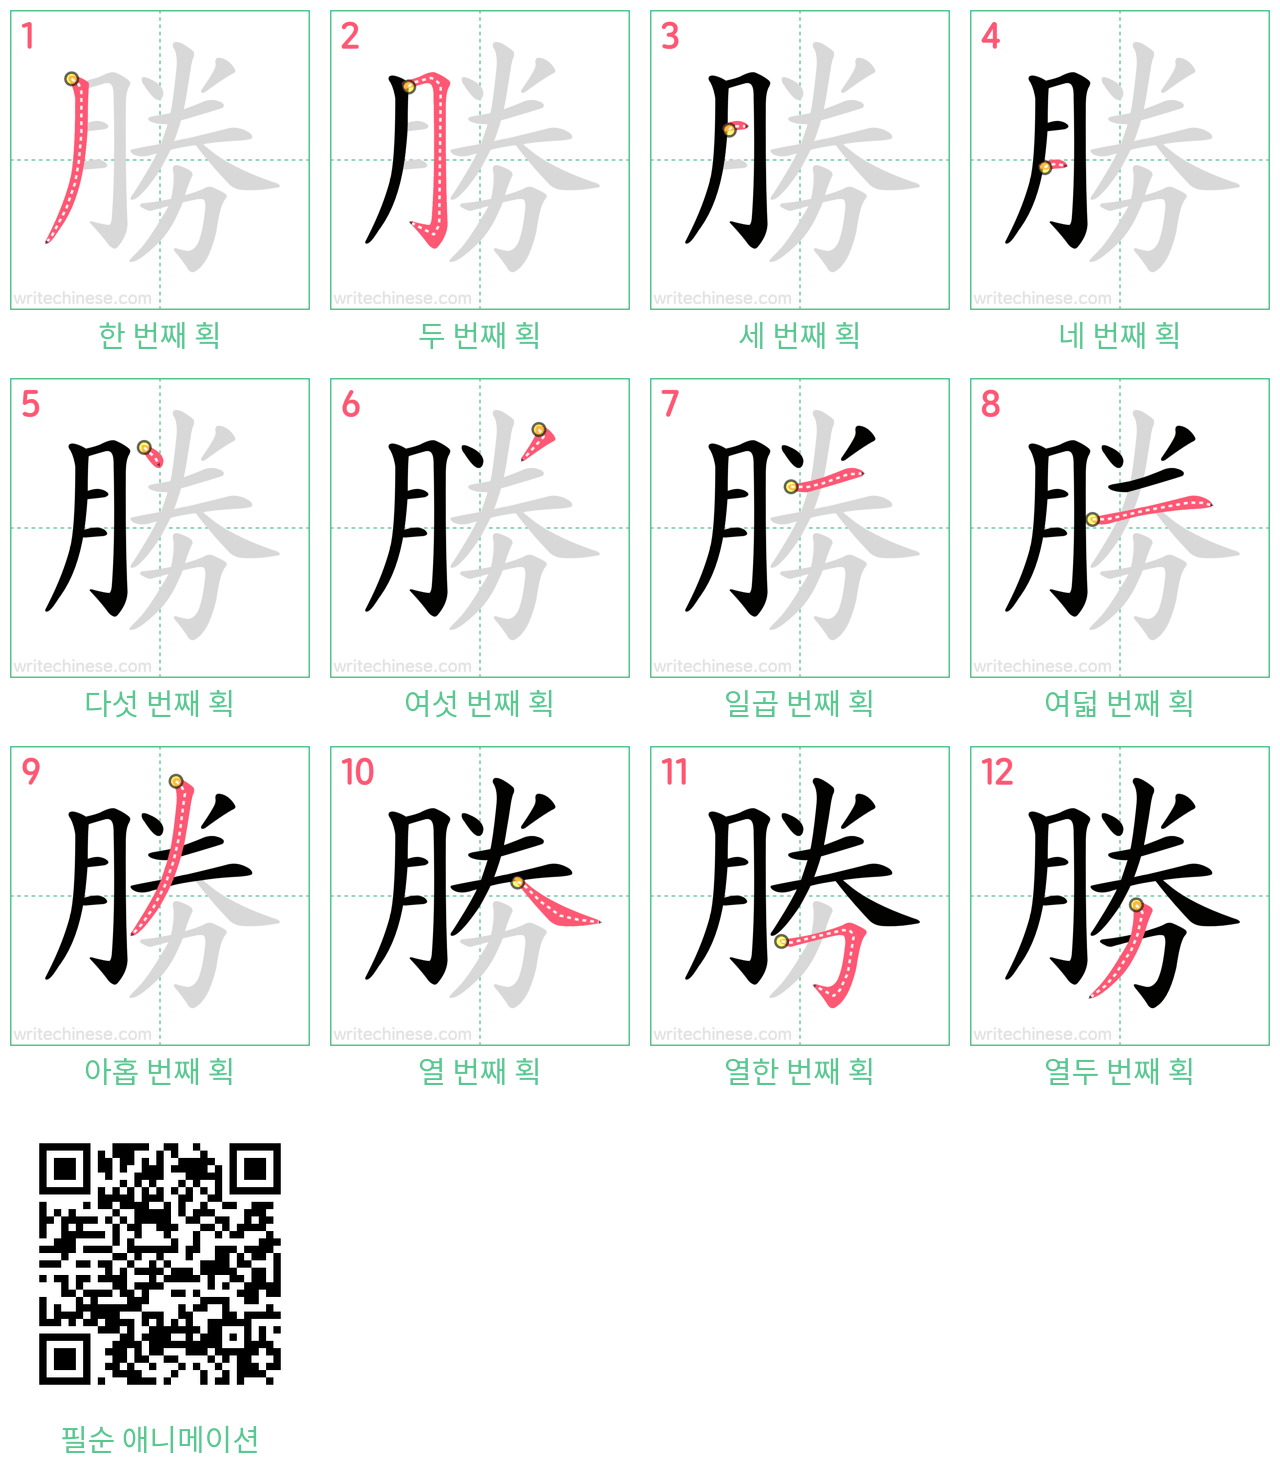 勝 step-by-step stroke order diagrams